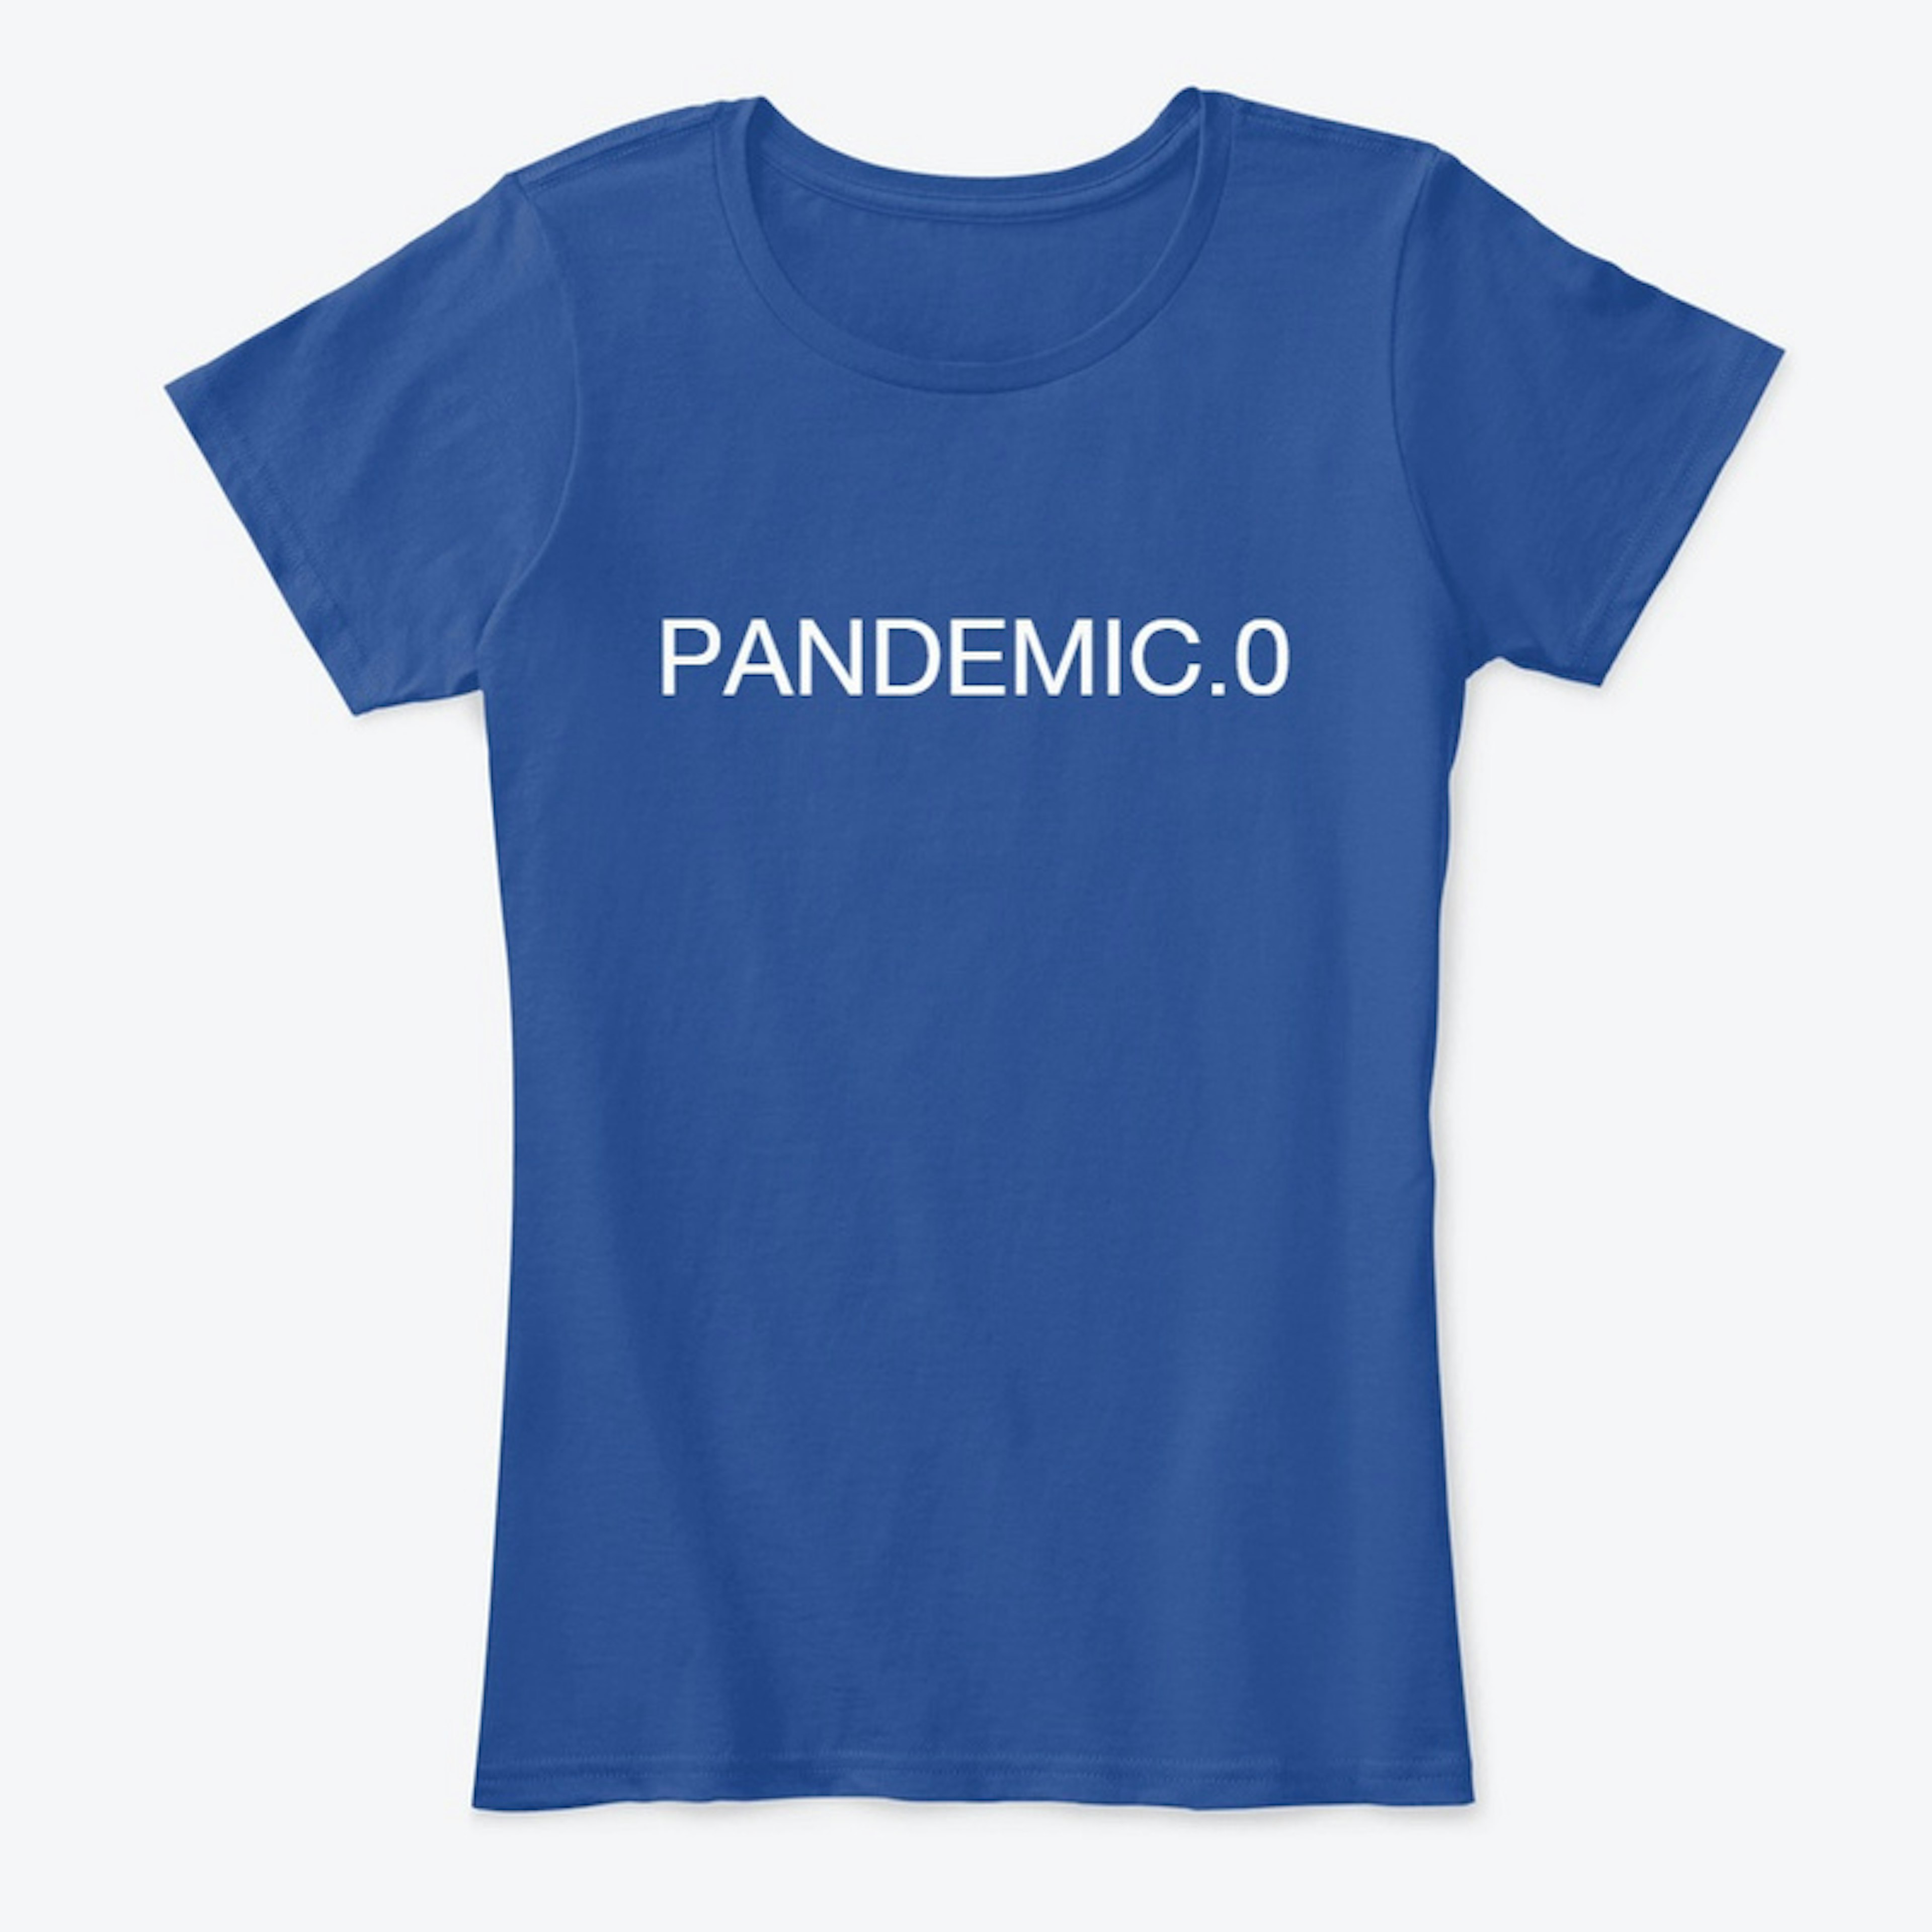 Pandemic.0